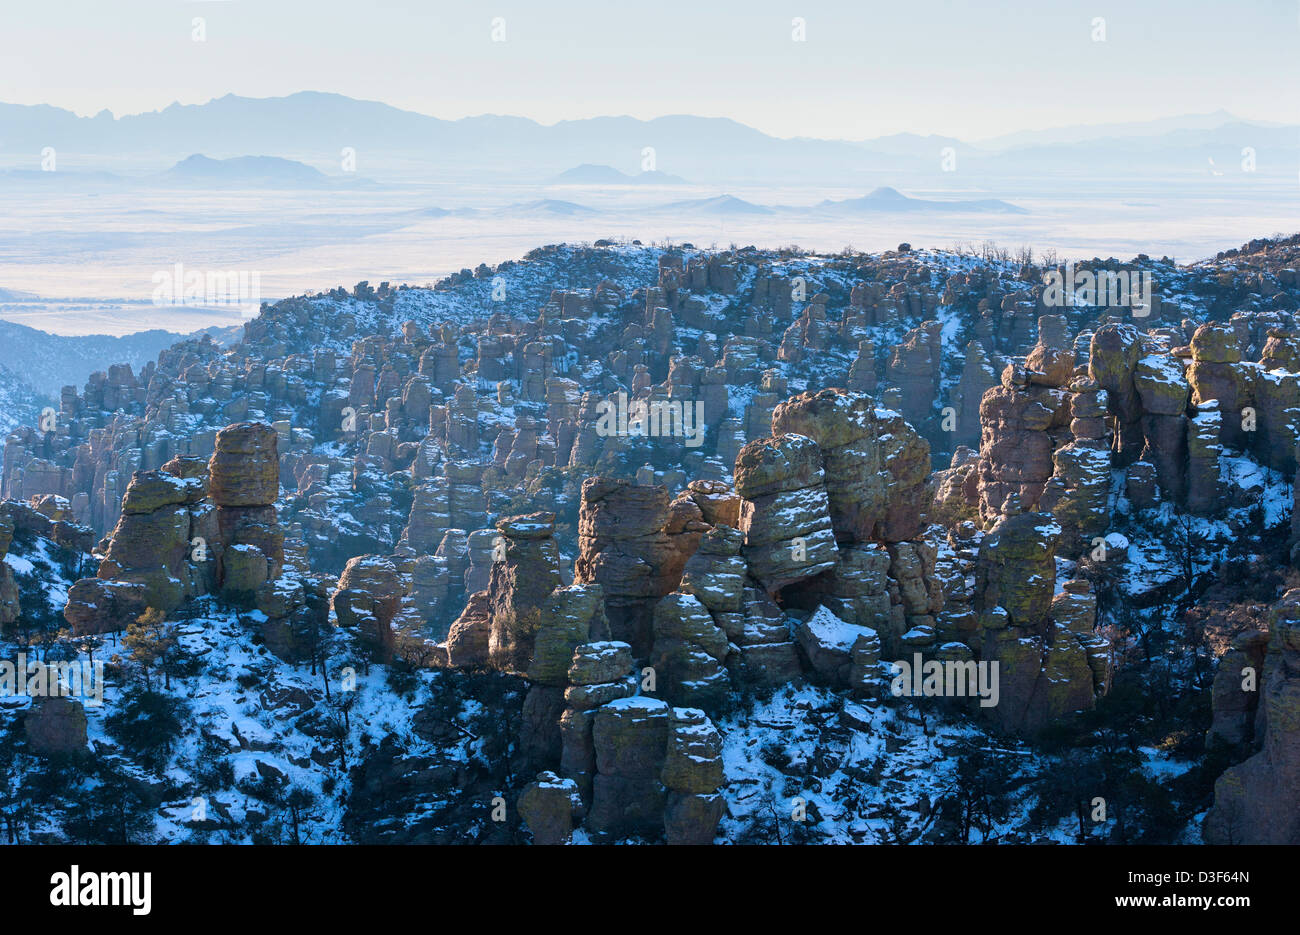 Chiricahua National Monument in winter Stock Photo